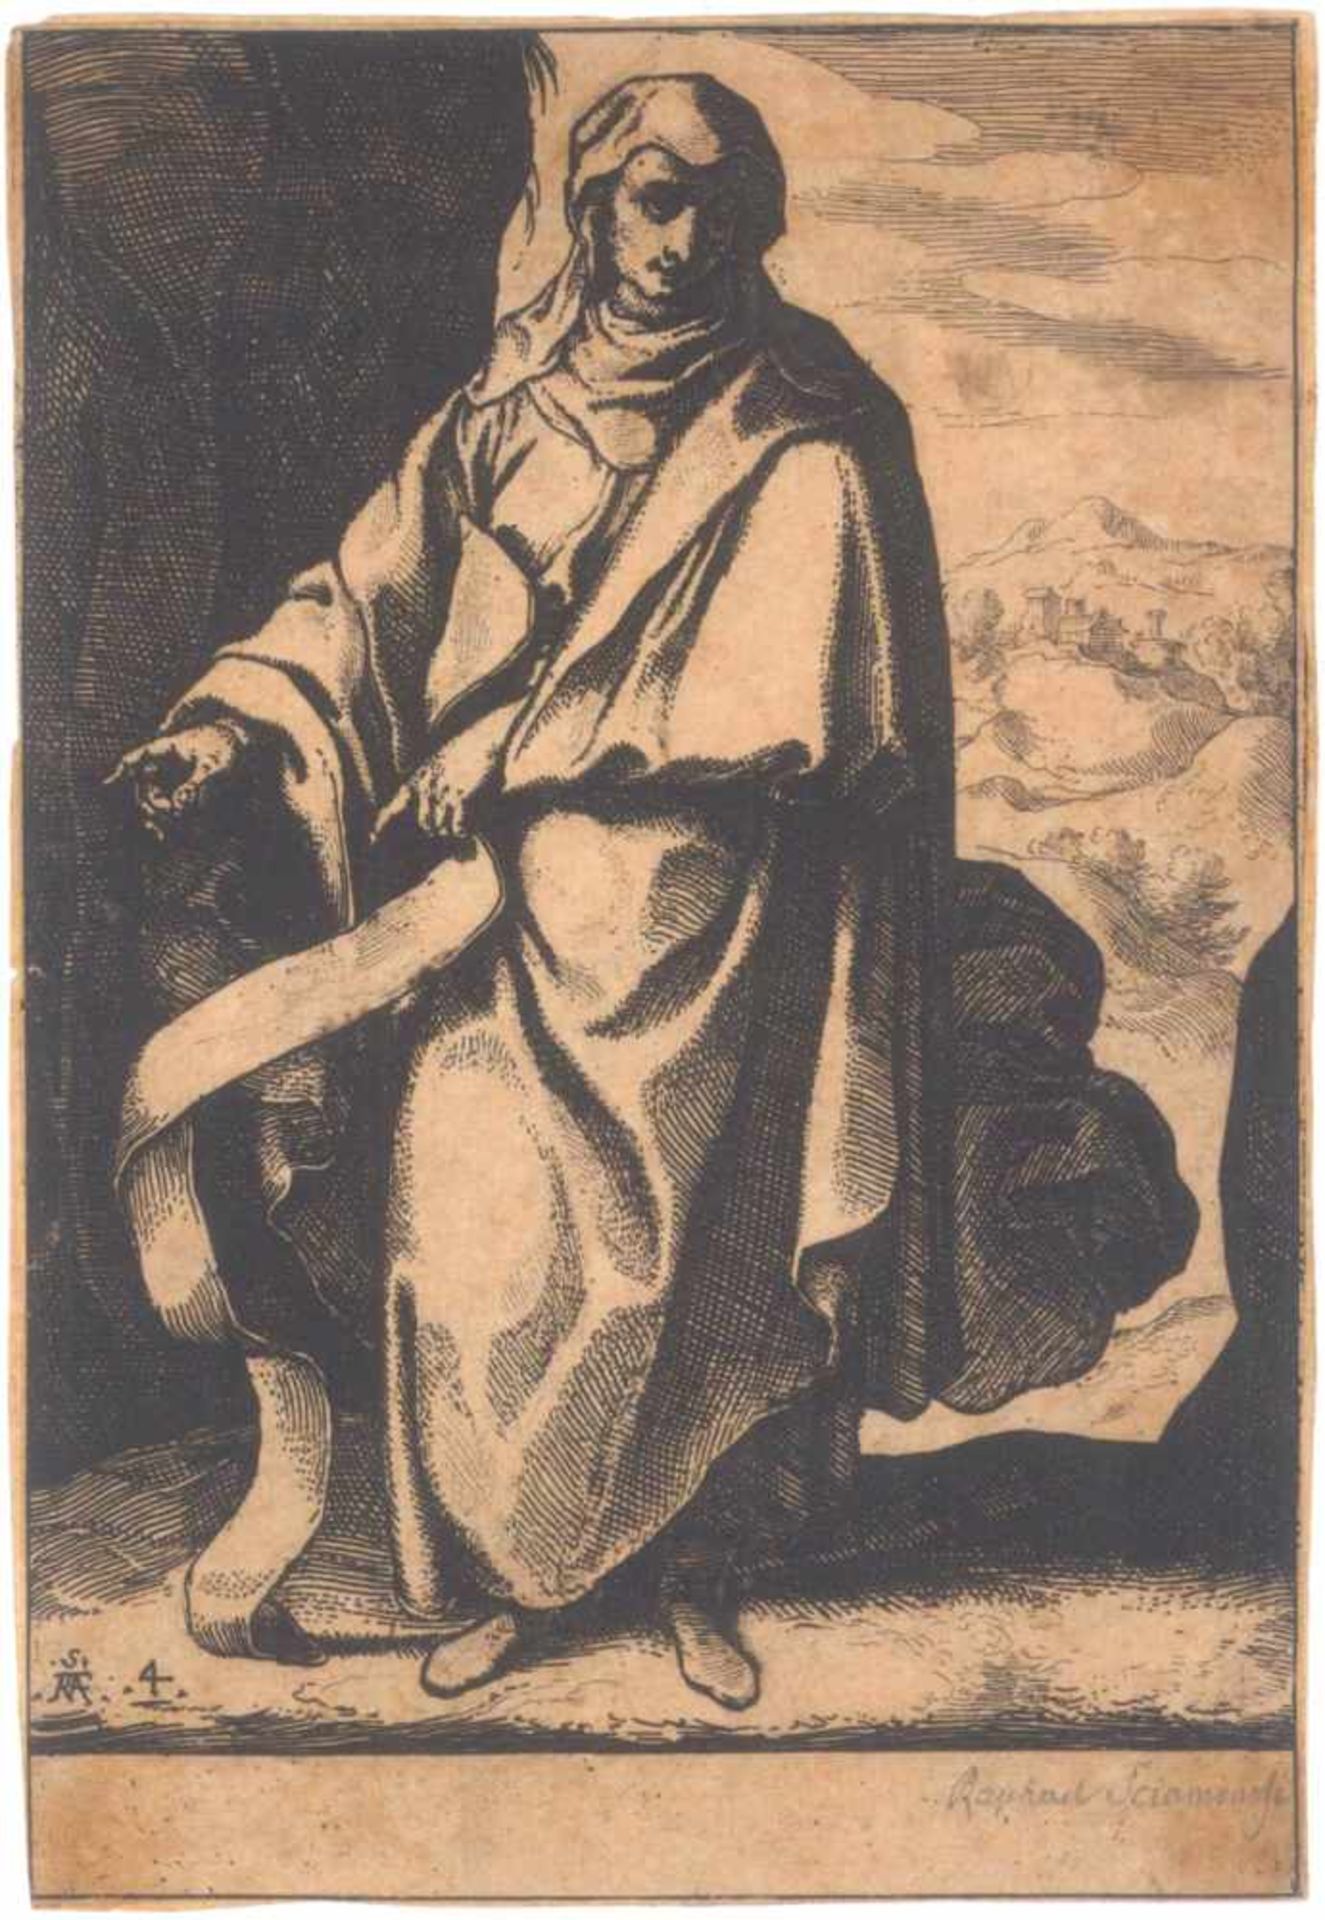 Raffaello Schiaminossi (1572 - 1622)Radierung um 1610, aus der Serie "Die zwölf Propheten",links